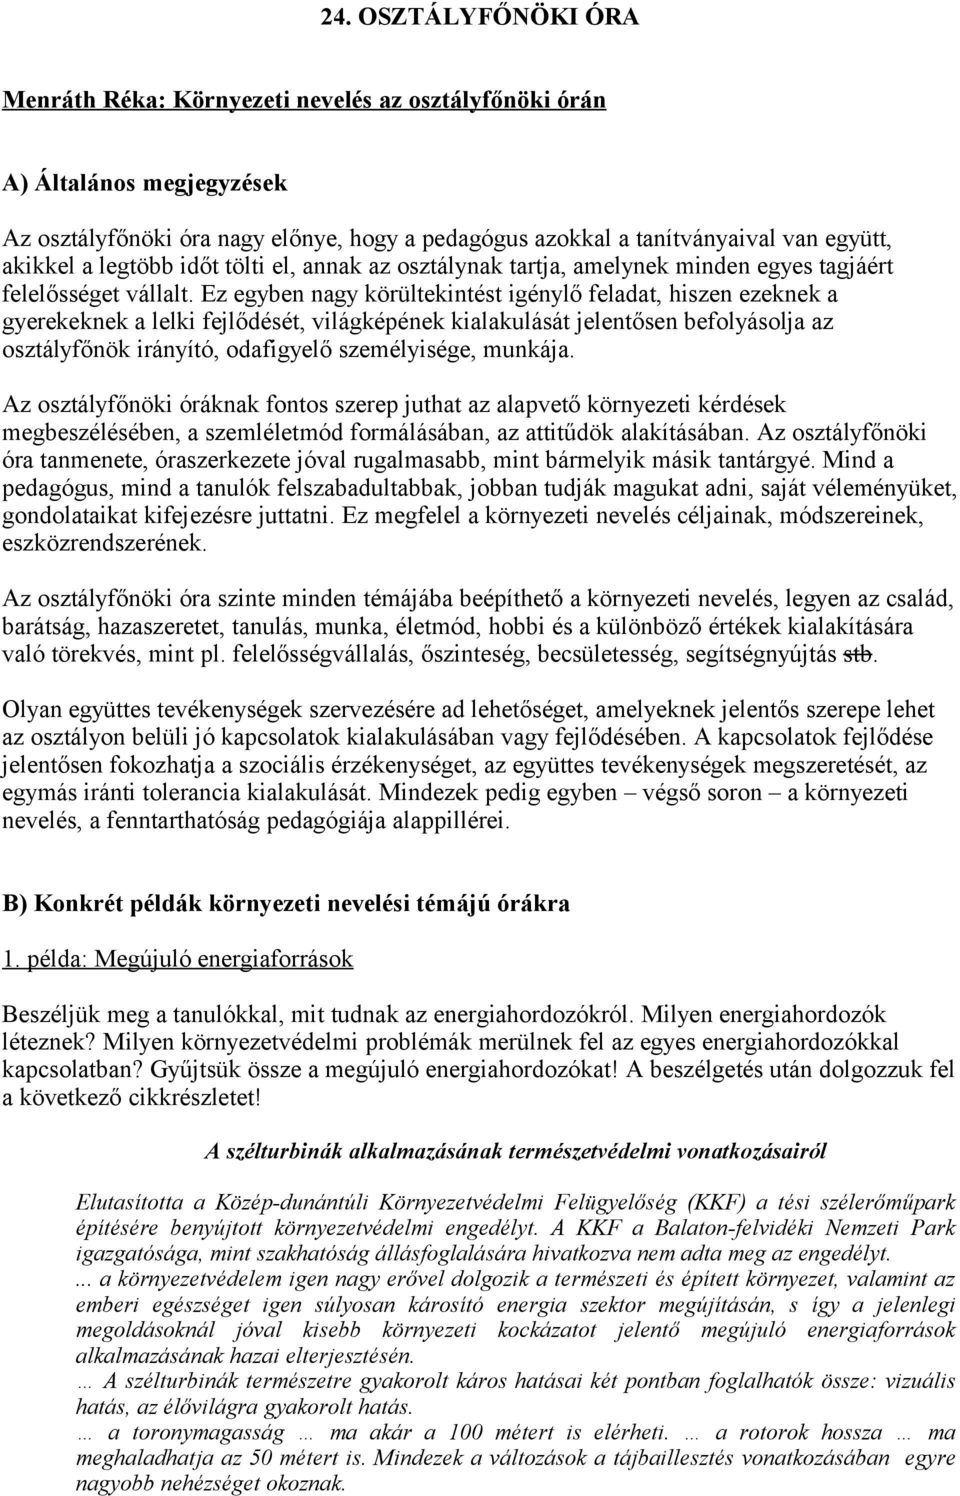 24. OSZTÁLYFŐNÖKI ÓRA - PDF Free Download